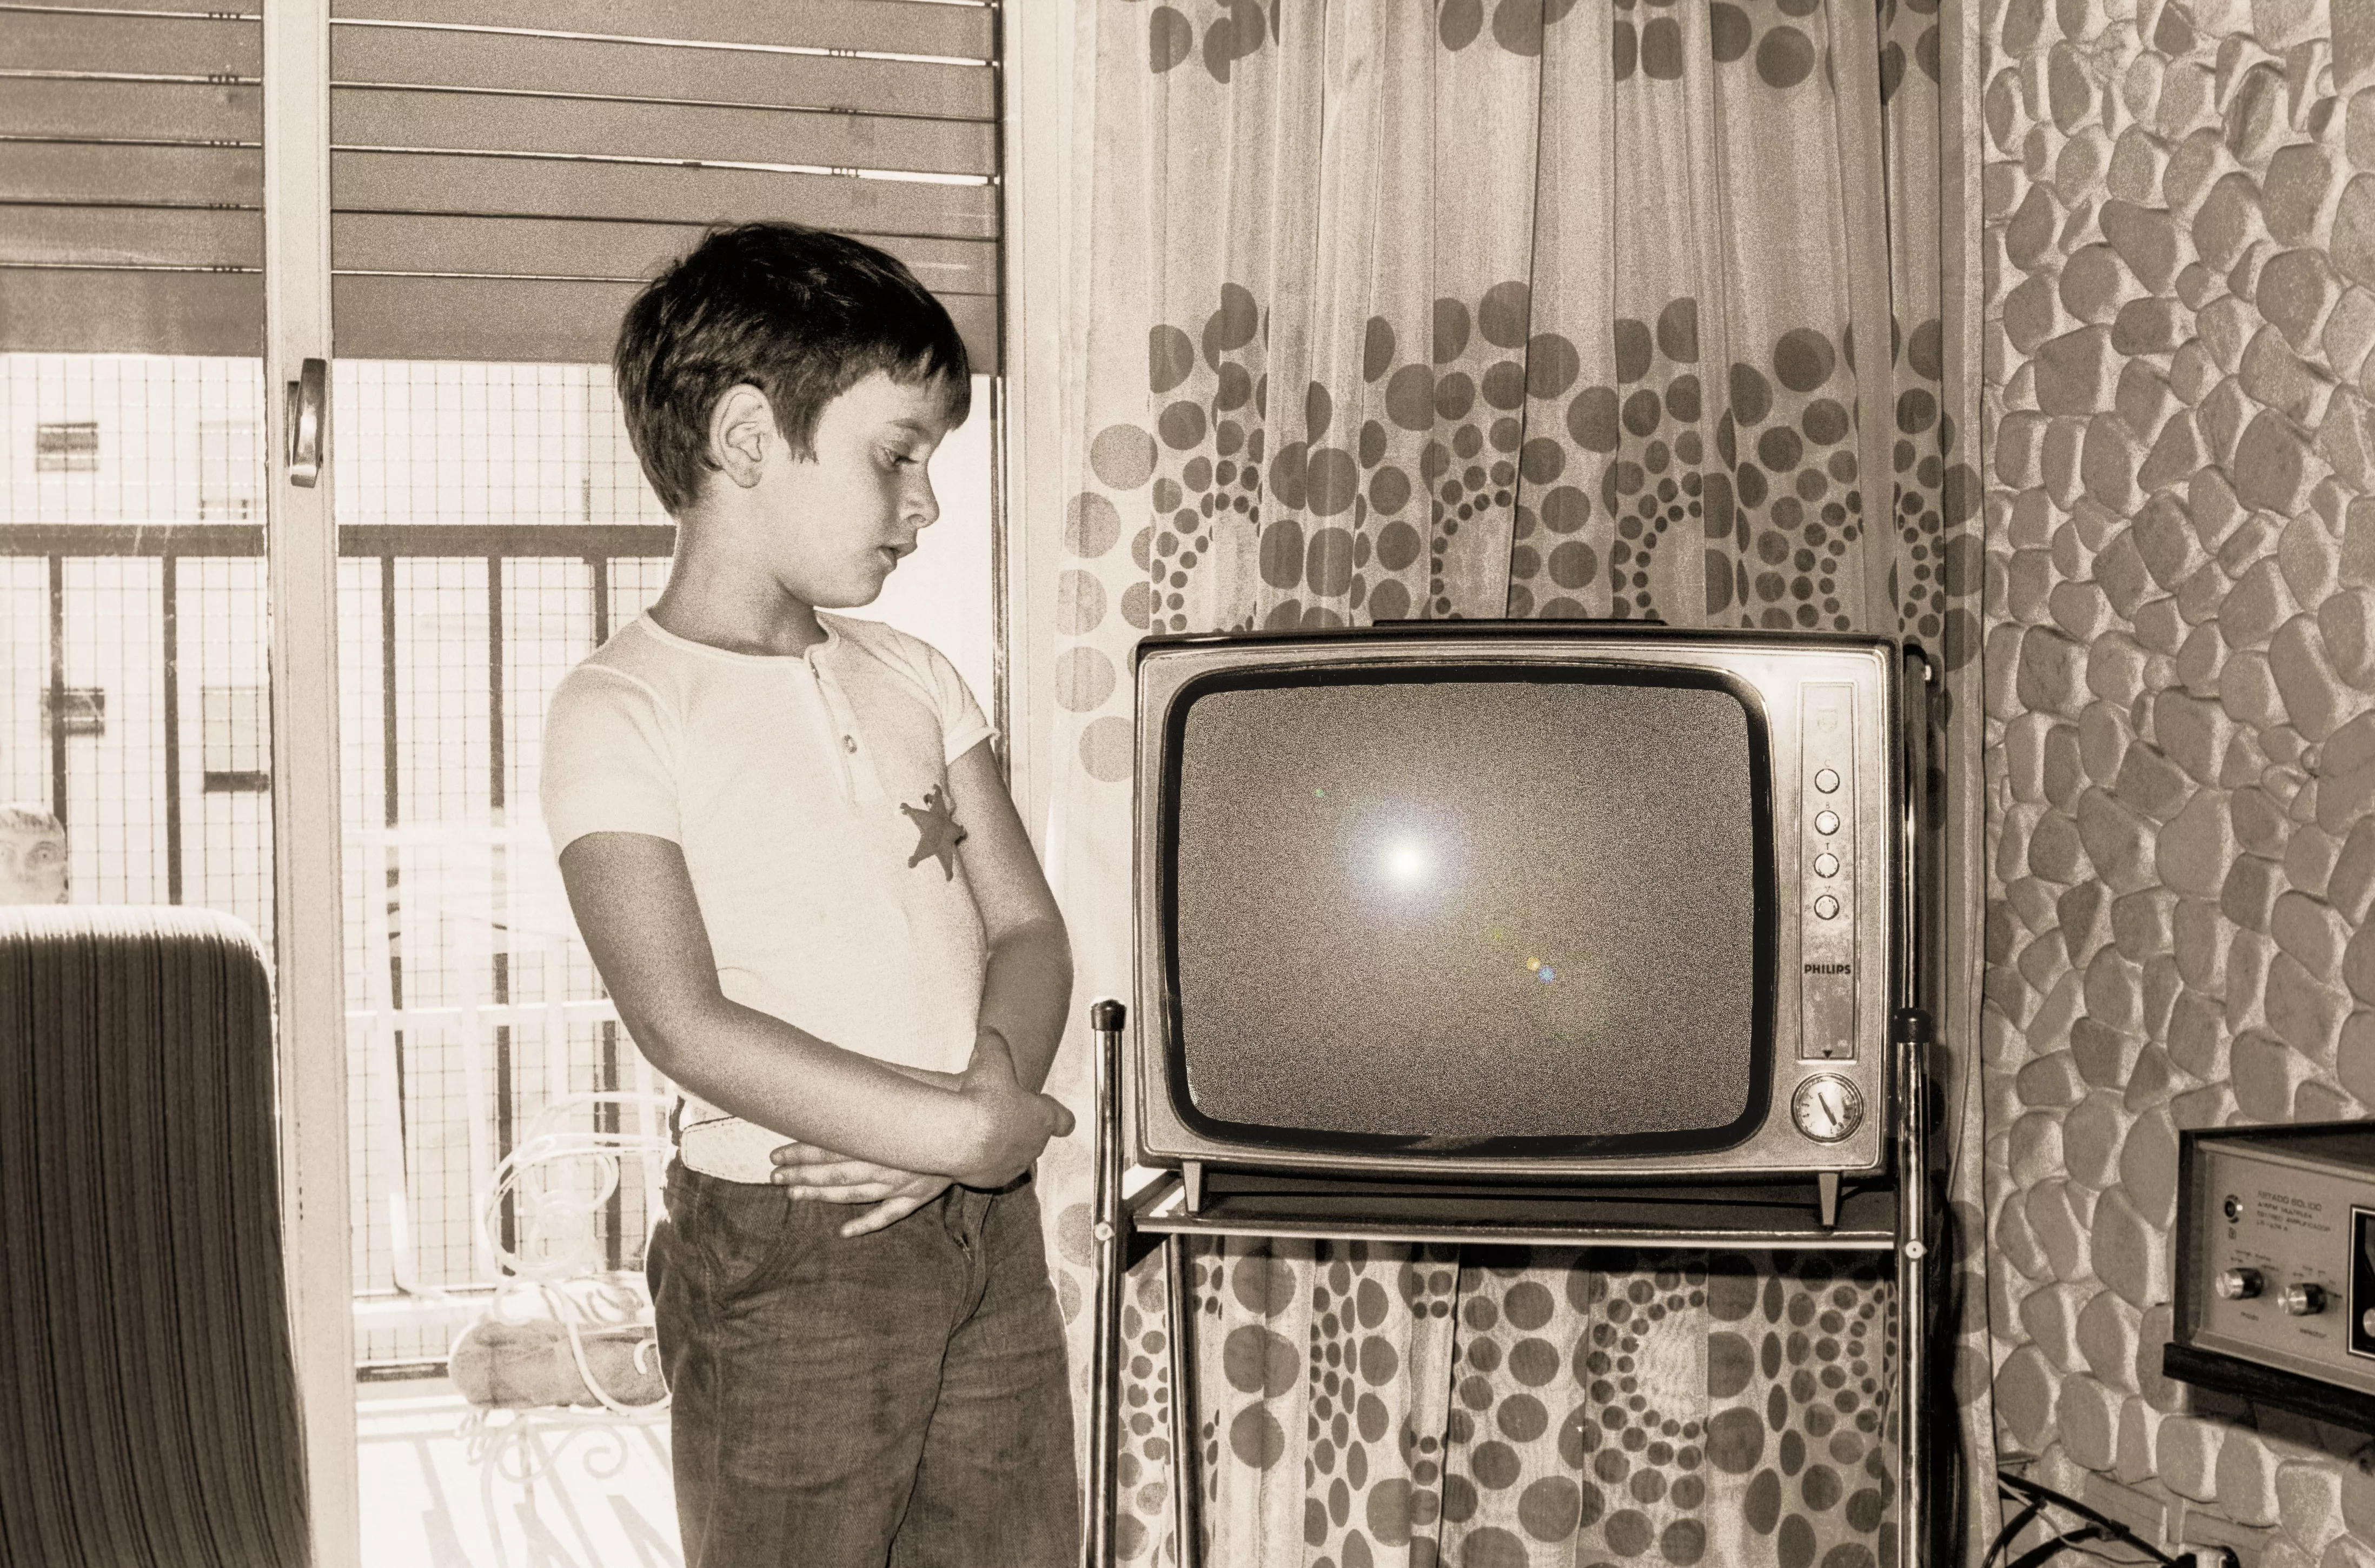 La televisió, una de les protagonistes del confinament, gairebé era inexistent als anys 60 a Espanya